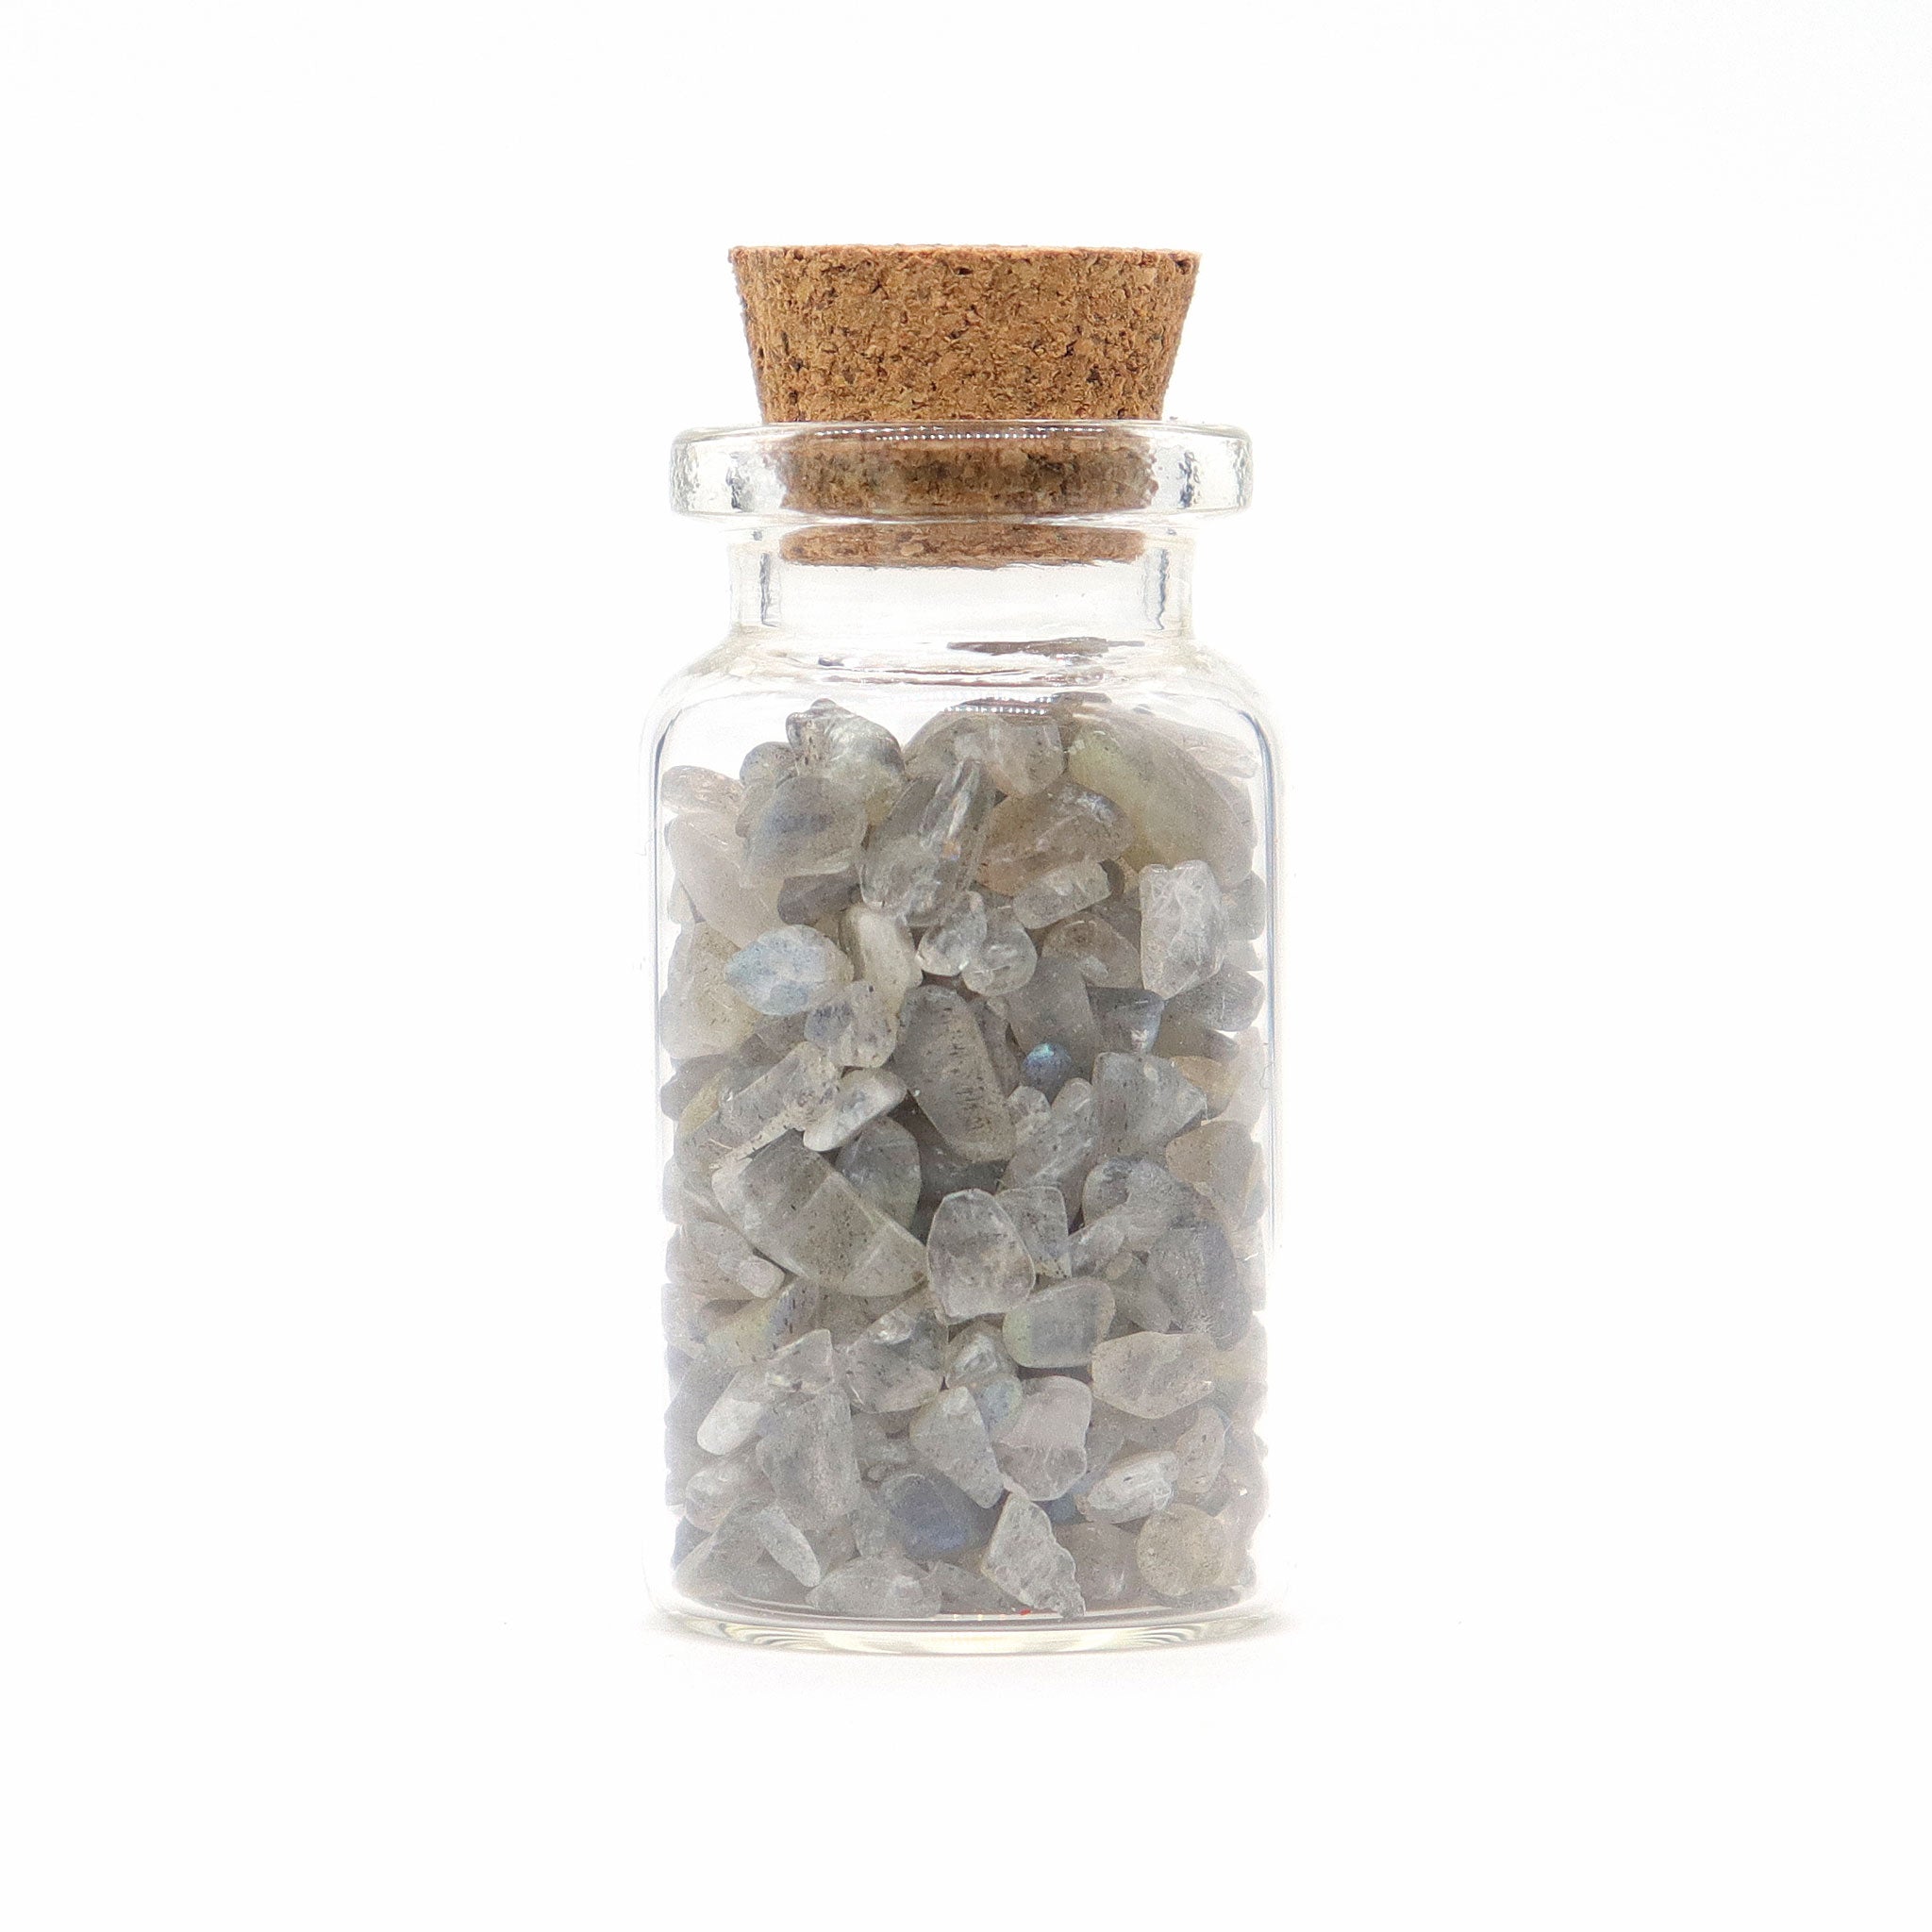 Labradorite Gemstones in Bottle